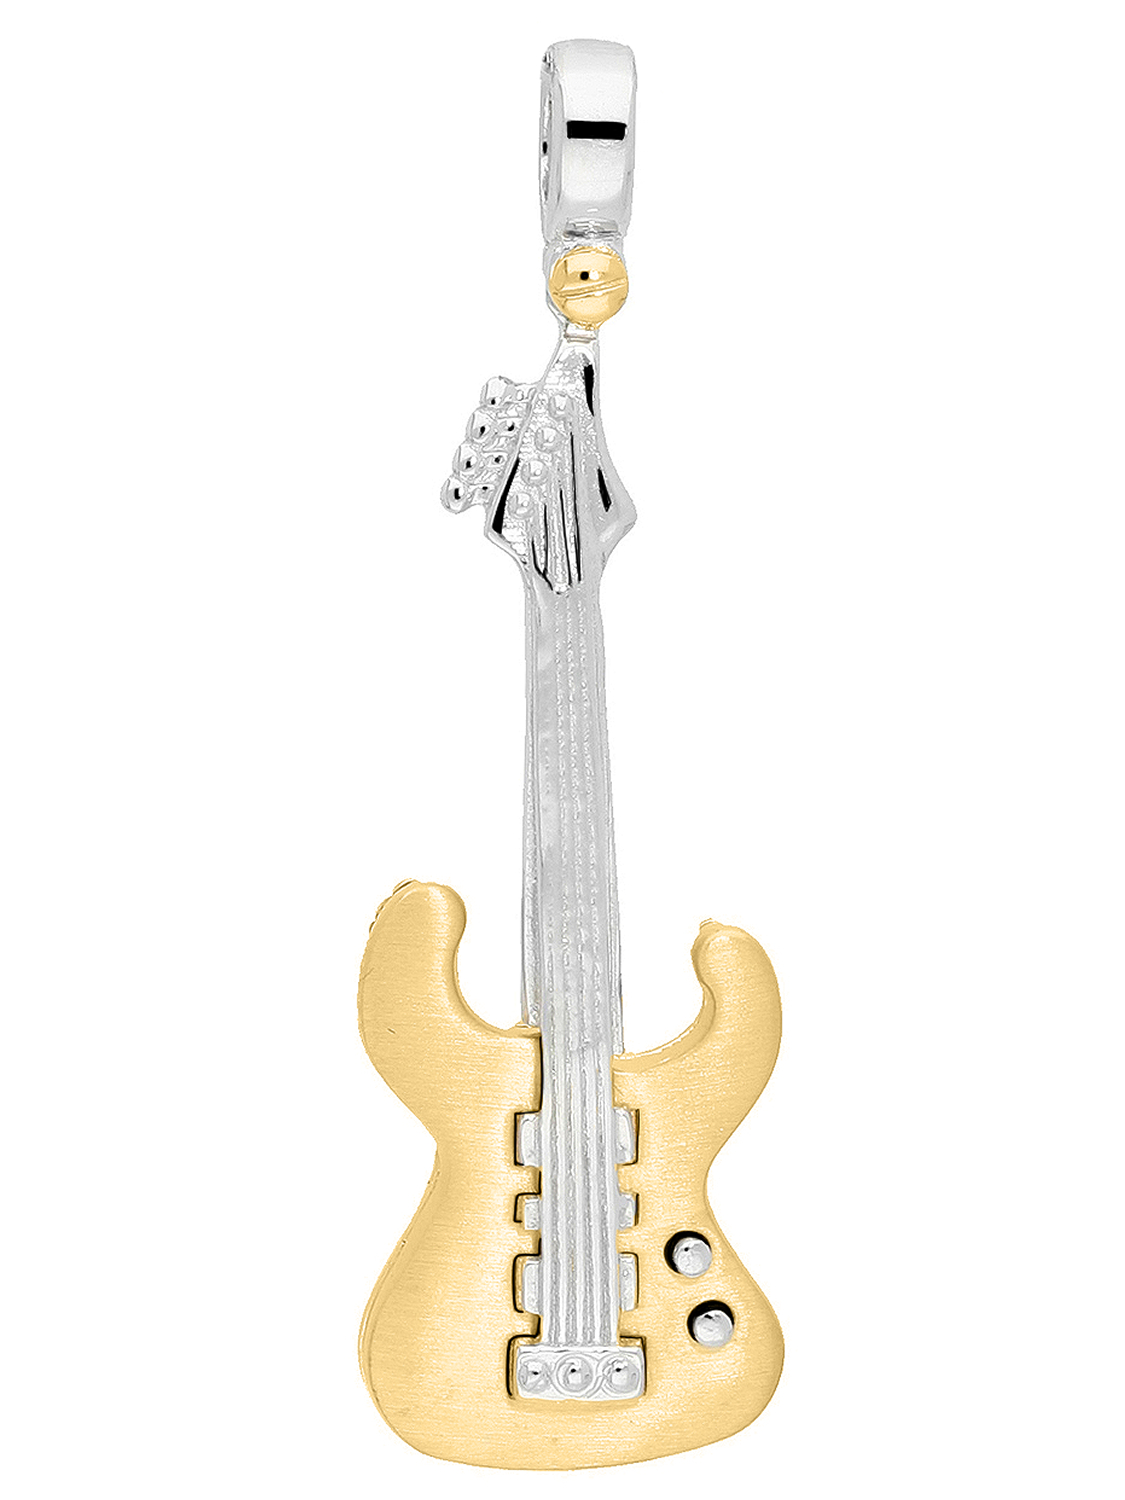 Anhänger für Herren aus echtem Gelbgold & Weißgold (Motiv Gitarre) - Instrument | Produktansicht